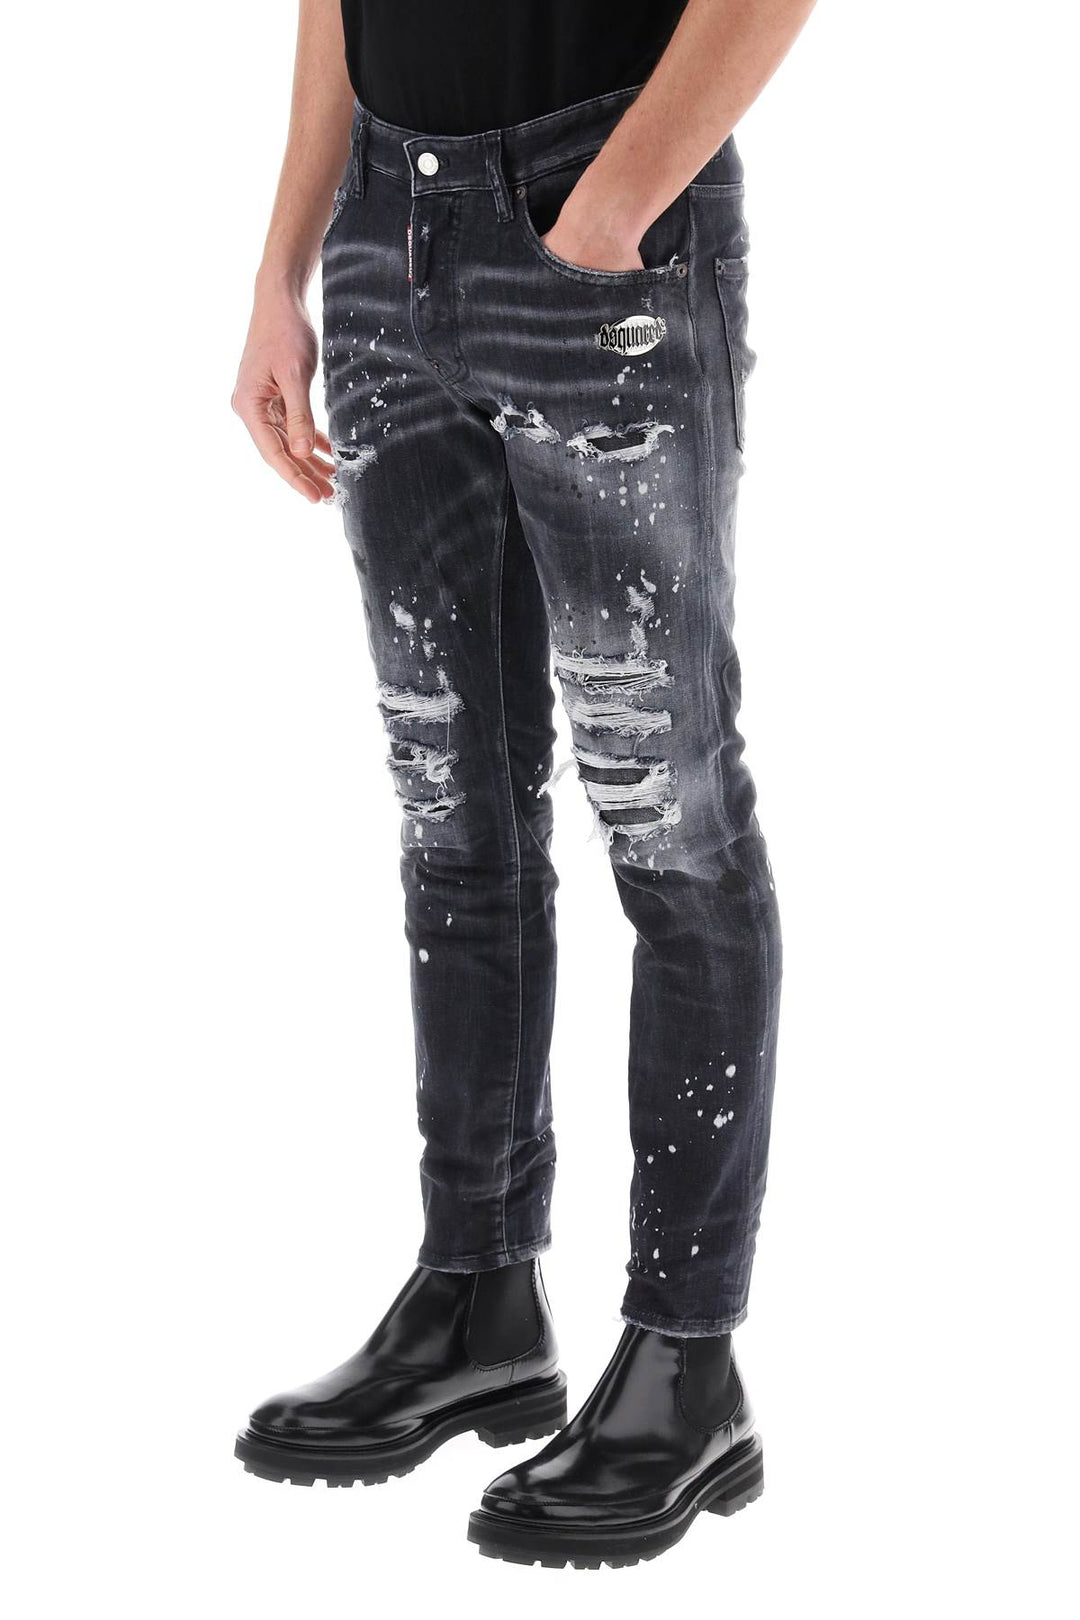 Jeans Skater In Black Diamond&Studs Wash - Dsquared2 - Uomo